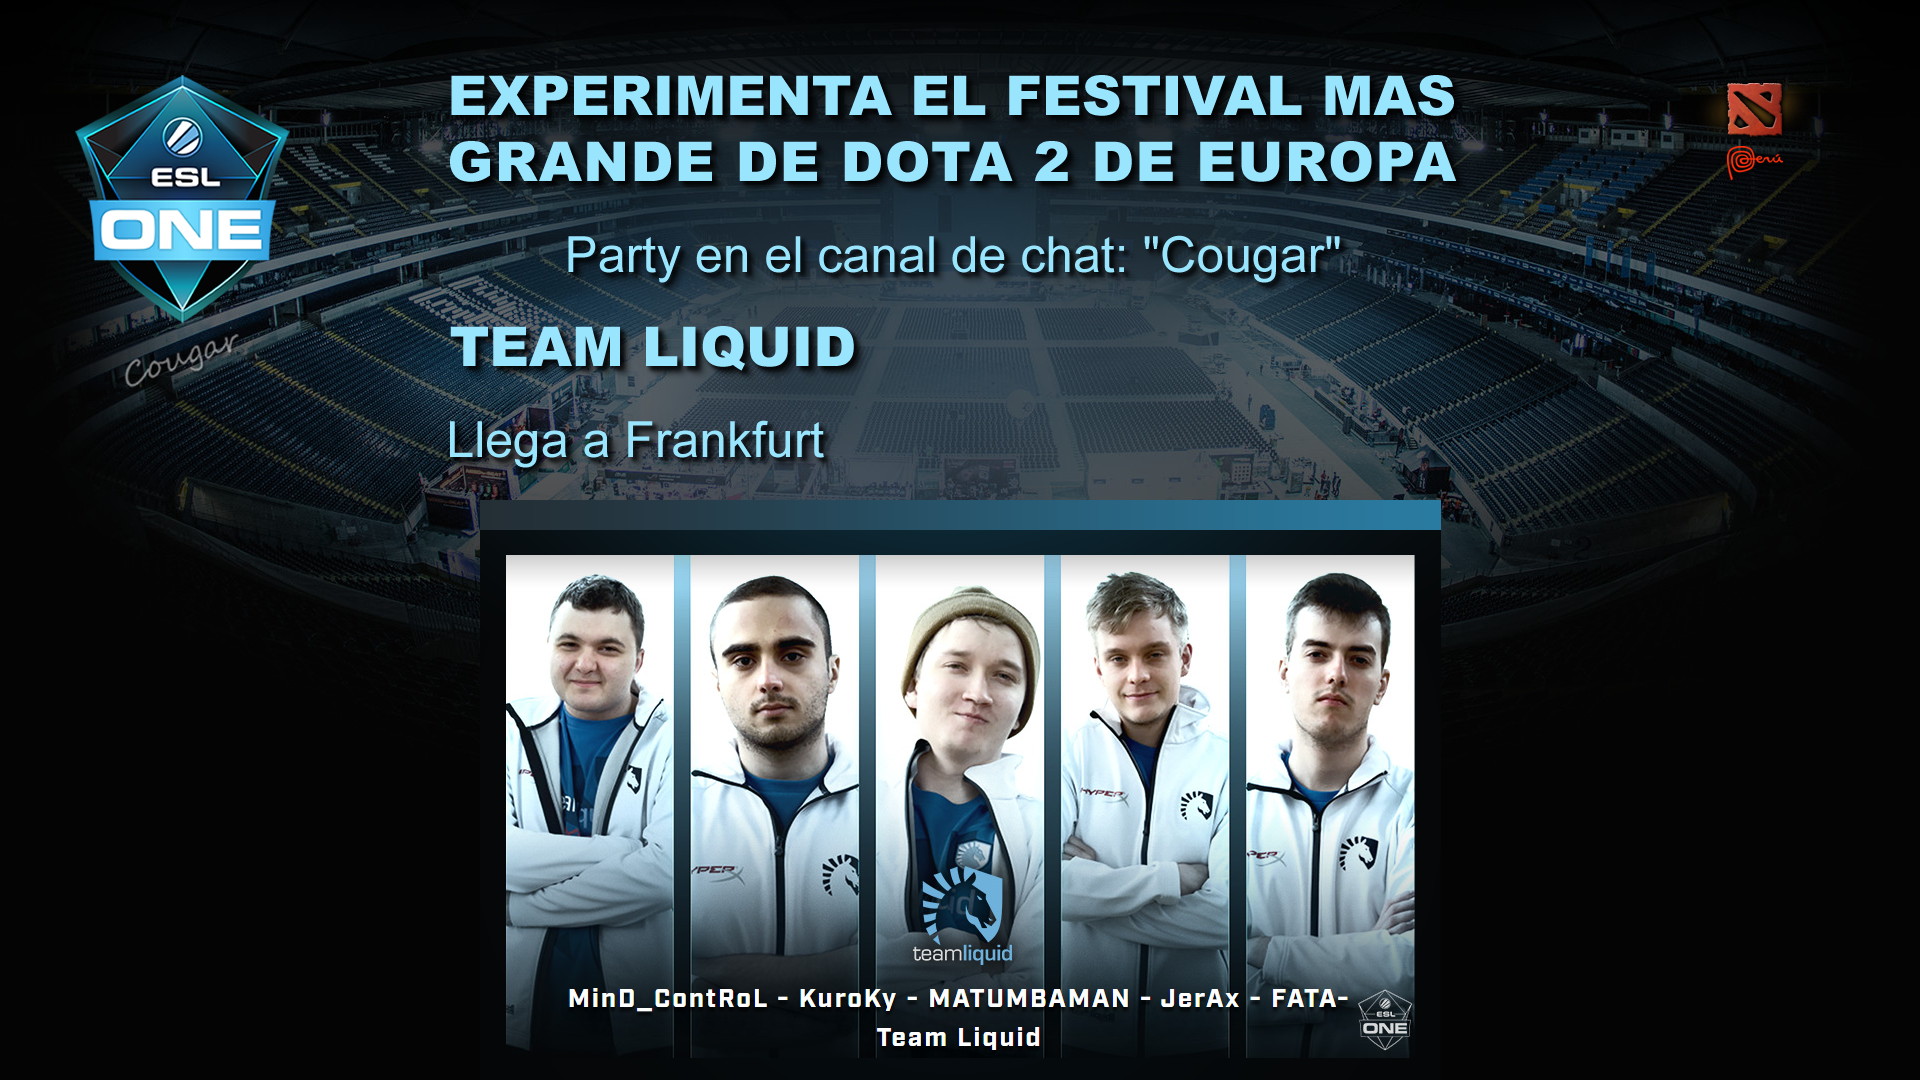 ESL ONE FRANKFURT 2016 Team Liquid